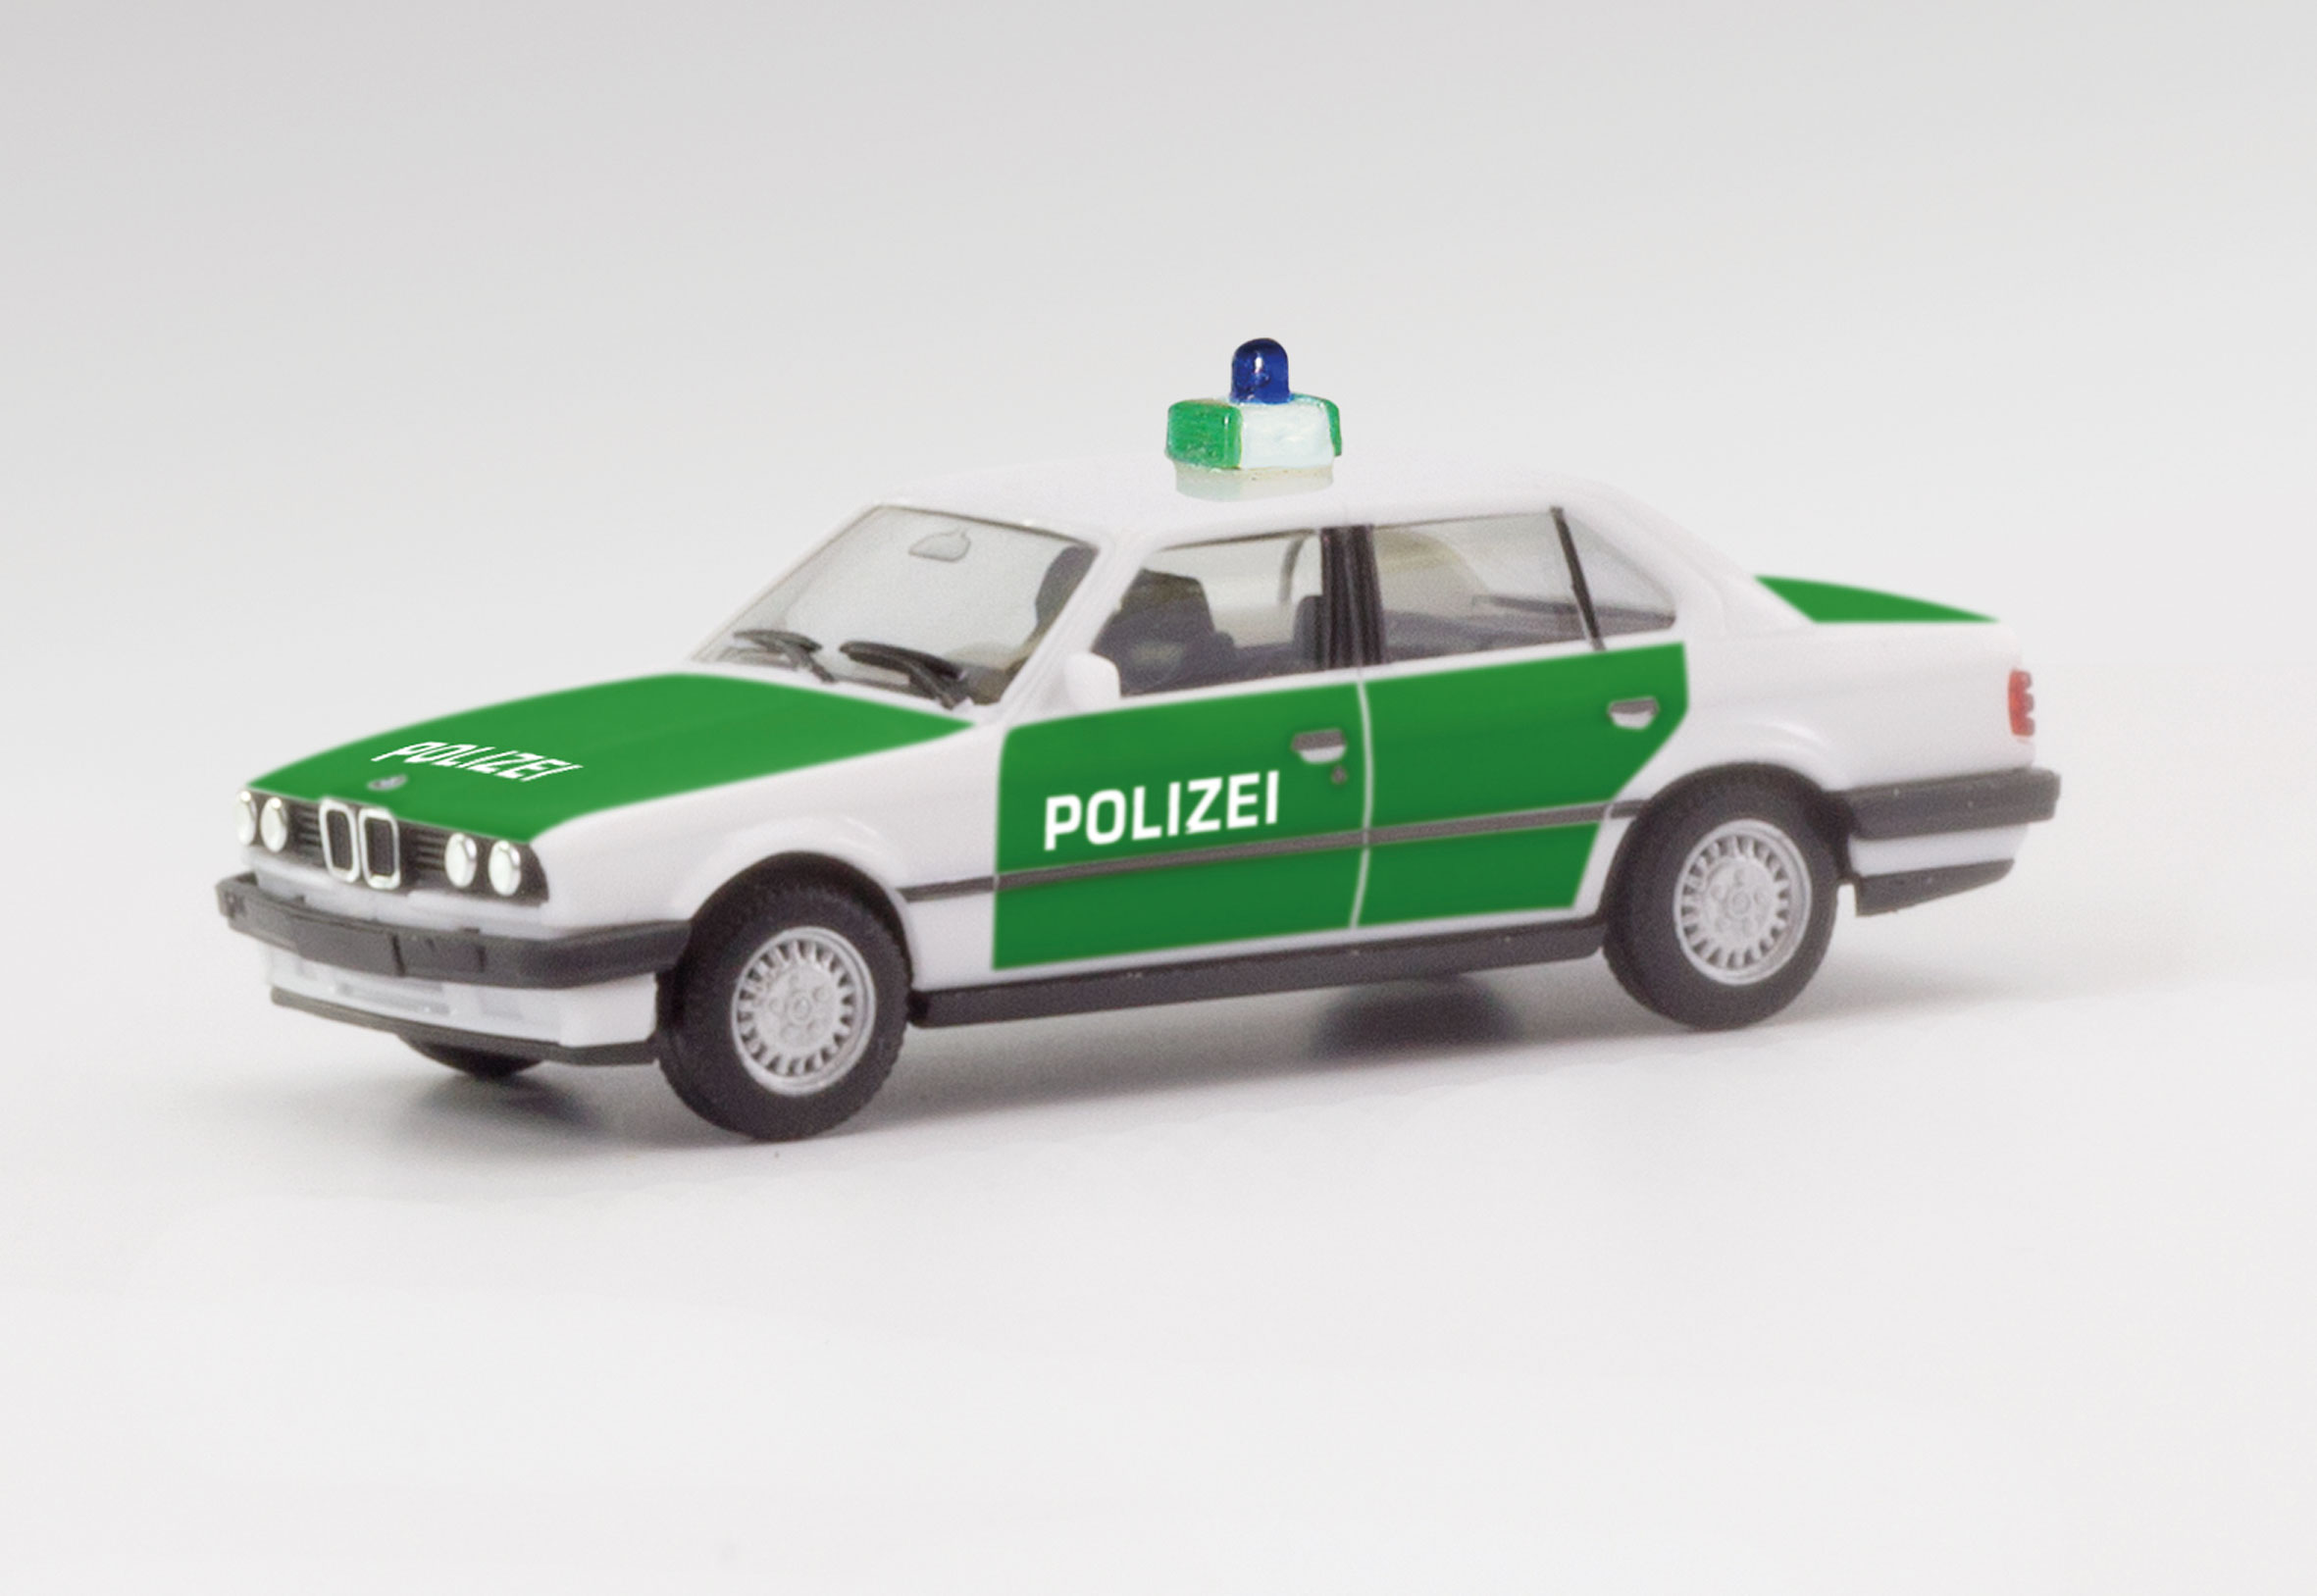 BMW 323i (E30) "Polizei"